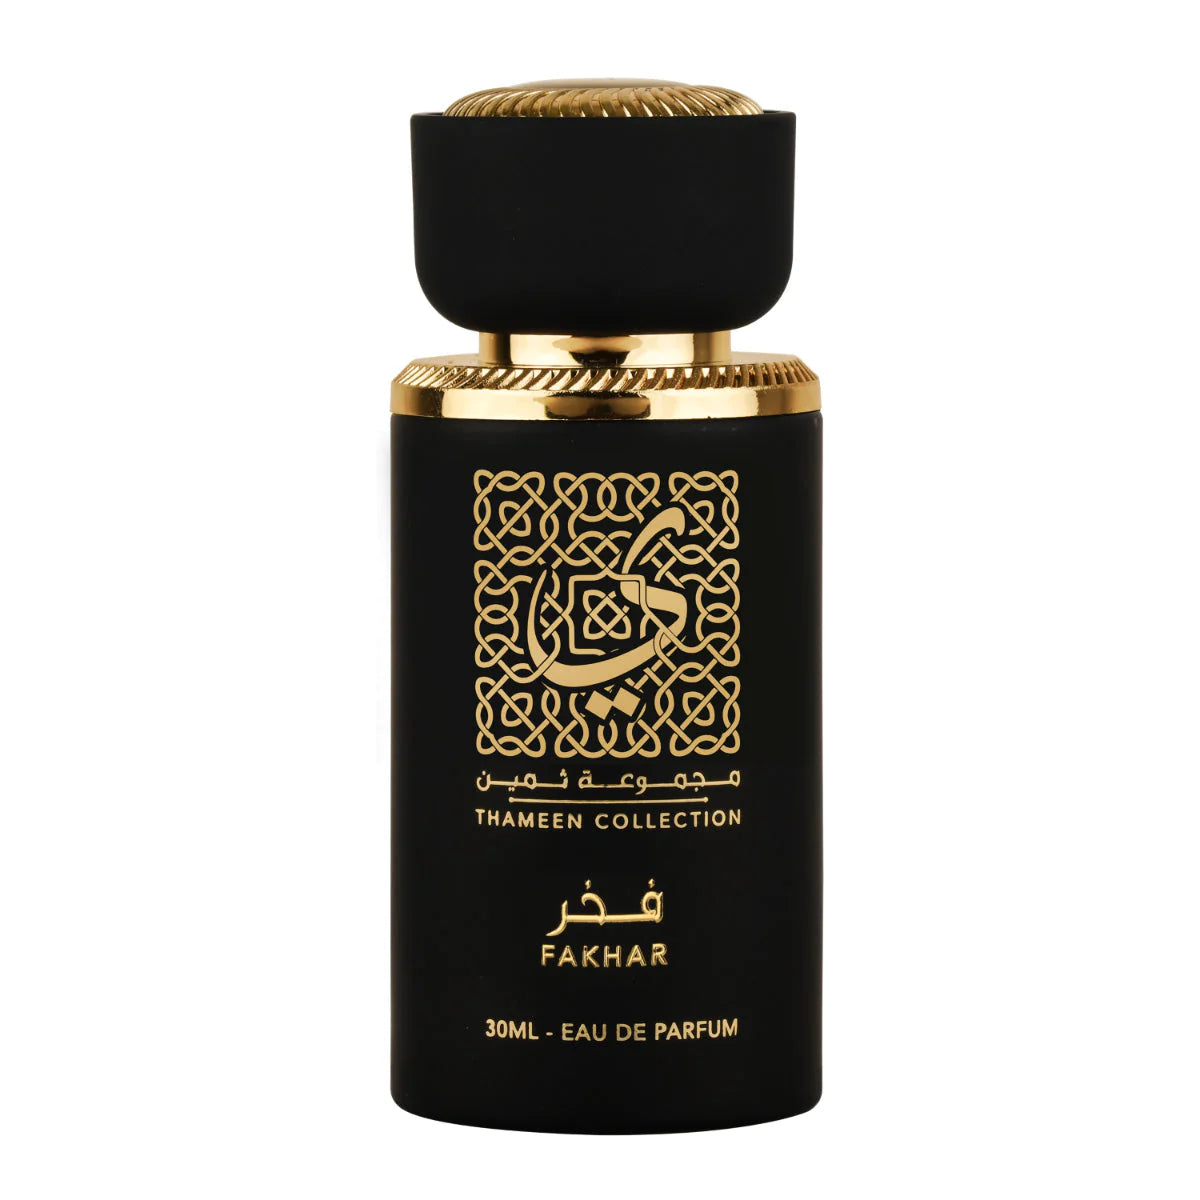 Thara 30ml Fakhar Collection EDP (Eau De Parfum) By lattafa